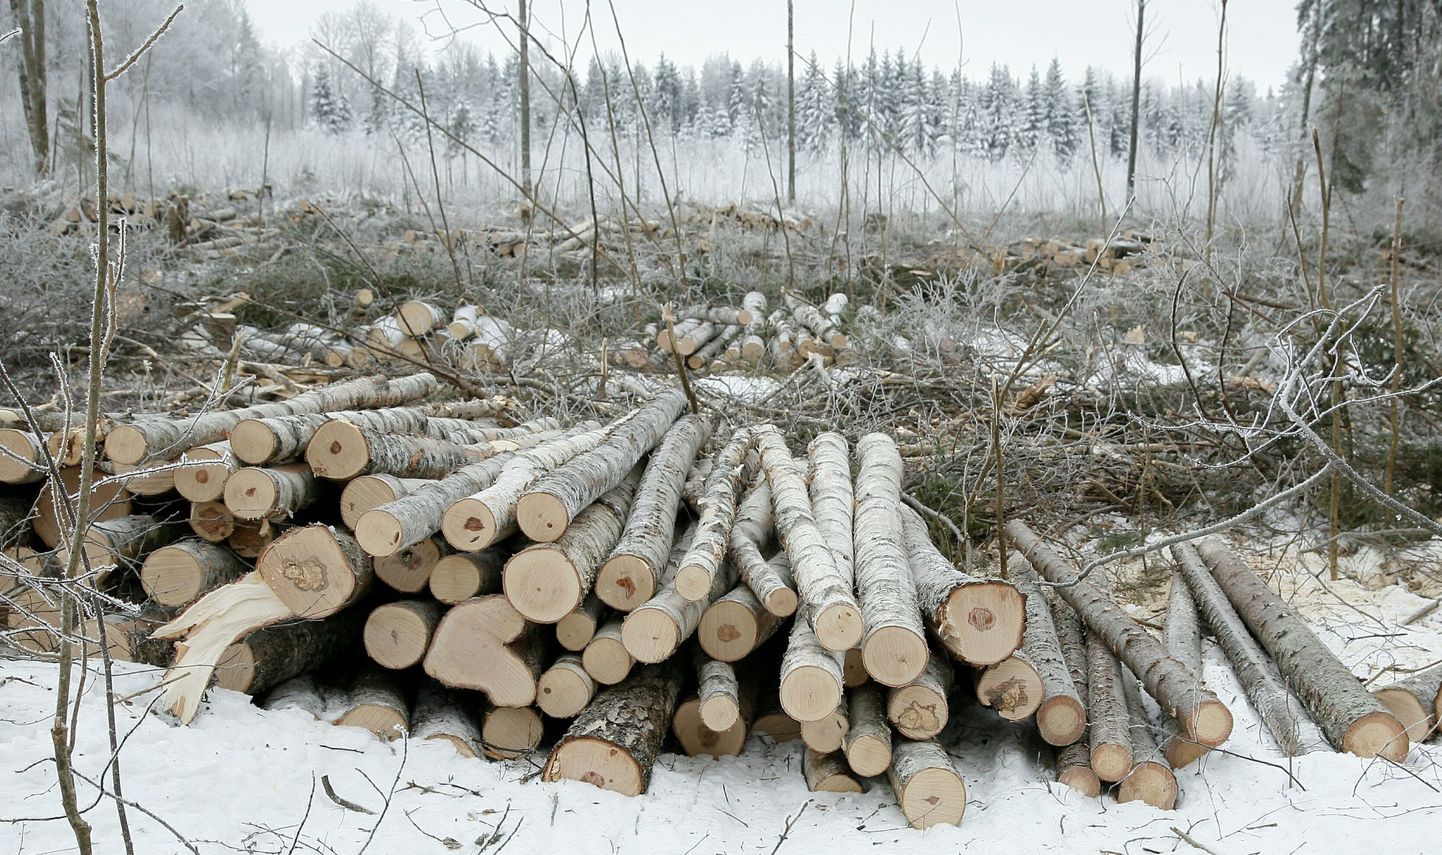 Kui metsaomanik otsustab raieküpseks saanud metsaosas raiet teha, on laias laastus kolm võimalust: teha raietööde korraldamist ja metsamaterjali müüki iseseisvalt, müüa raieõiguse kokkuleppehinnaga kasvava metsa väärtuse alusel või müüa raieõigust metsamaterjali väljatuleku alusel.